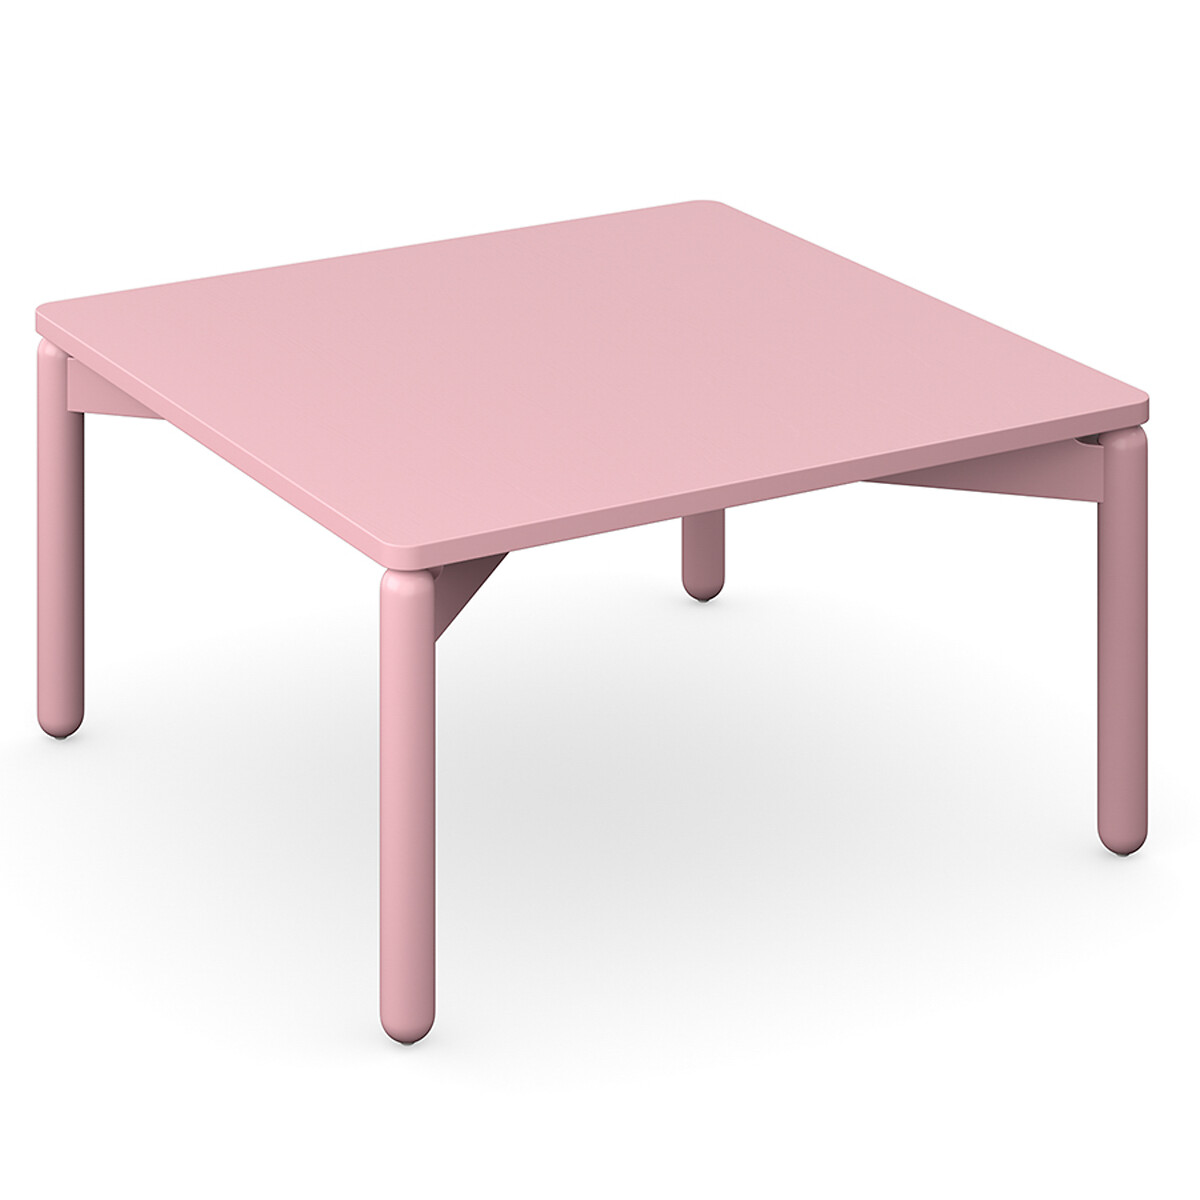 Столик кофейный Saga 75х75 см  2 персоны розовый LaRedoute, размер 2 персоны - фото 5